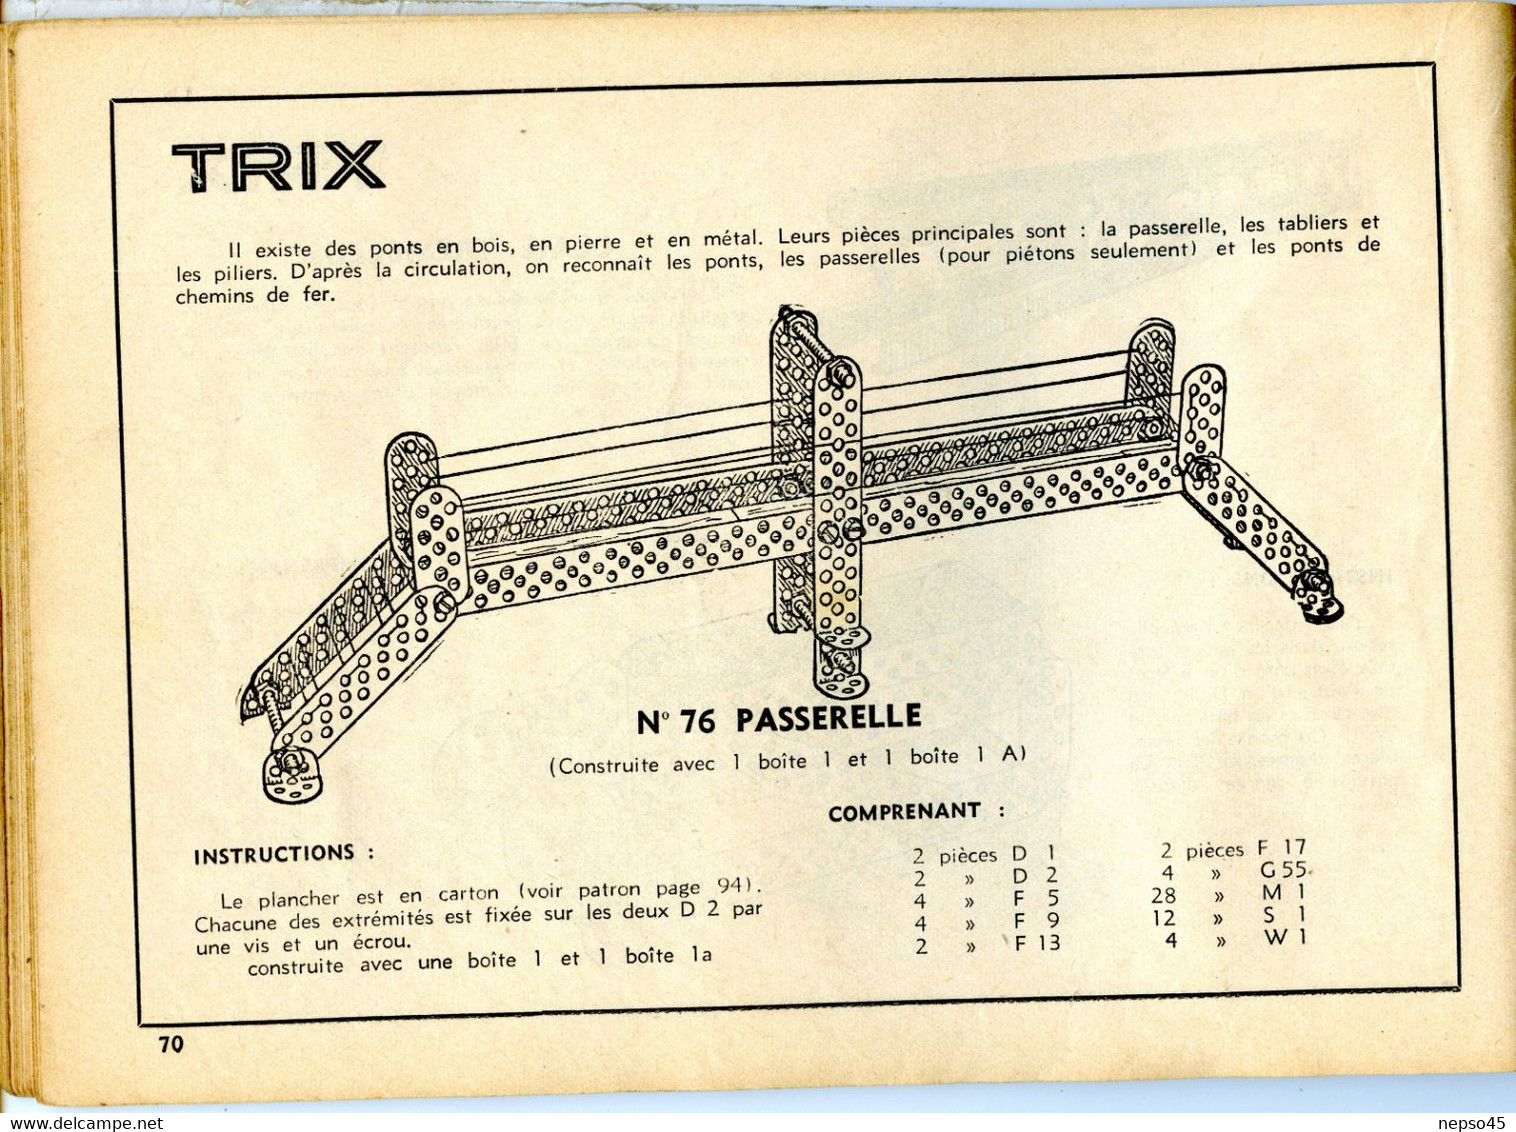 Album de Modèles pour Trix jeu  de construction métallique concurrent du système Meccano.